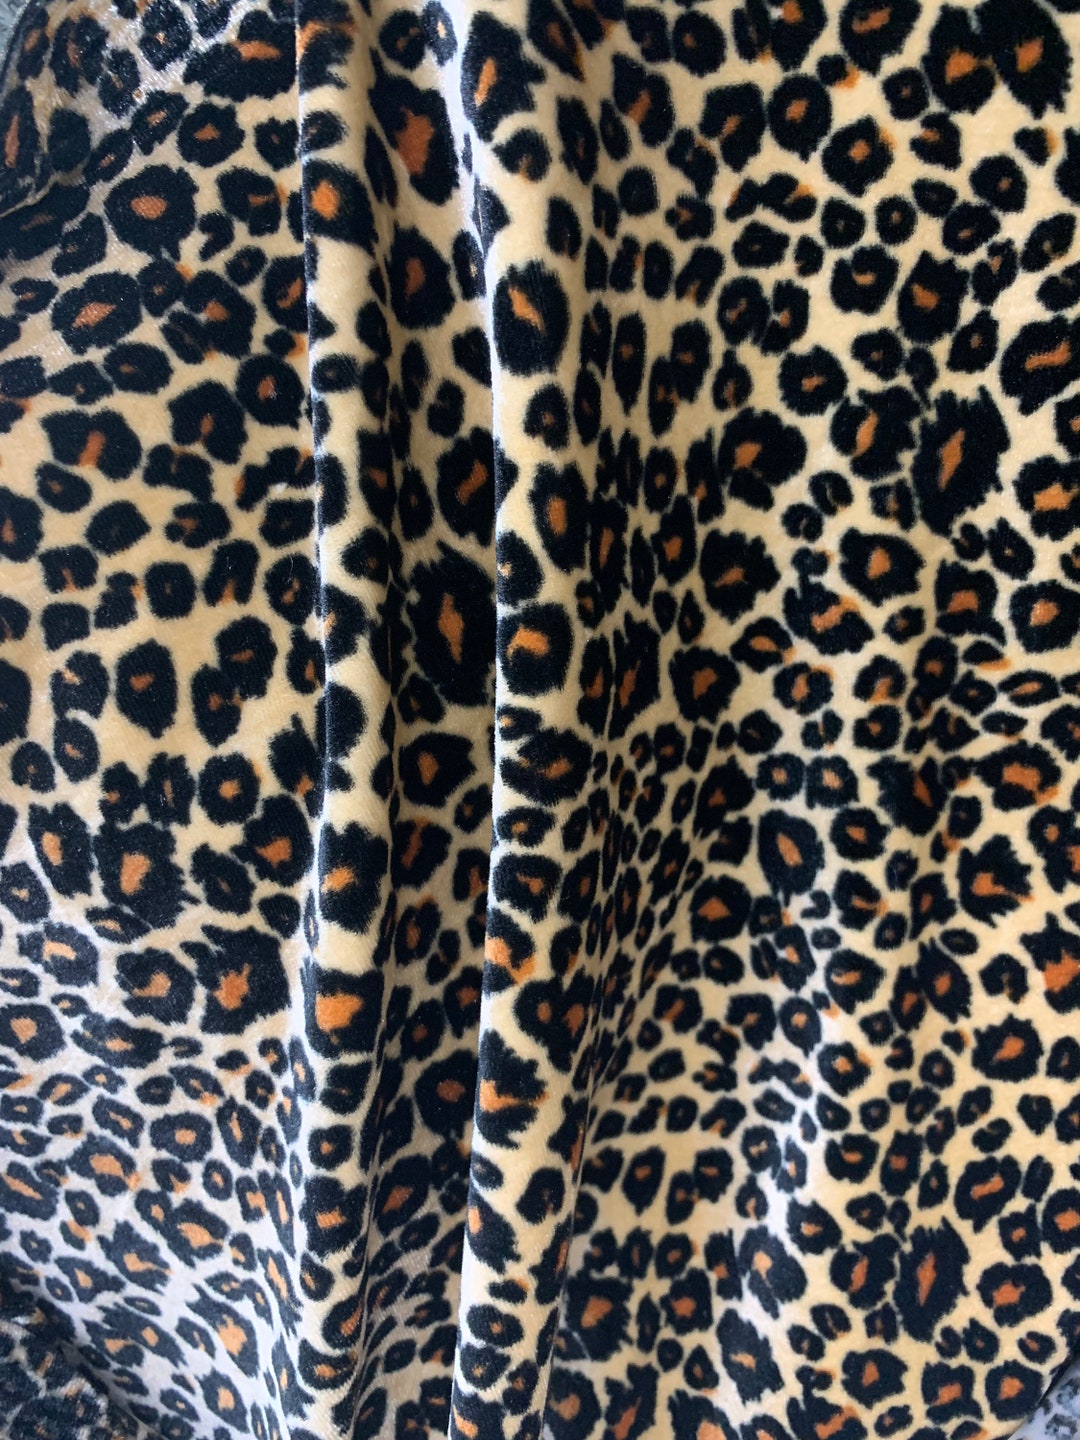 New Premier Exotic Leopard Design Print on Stretch Velvet - Etsy